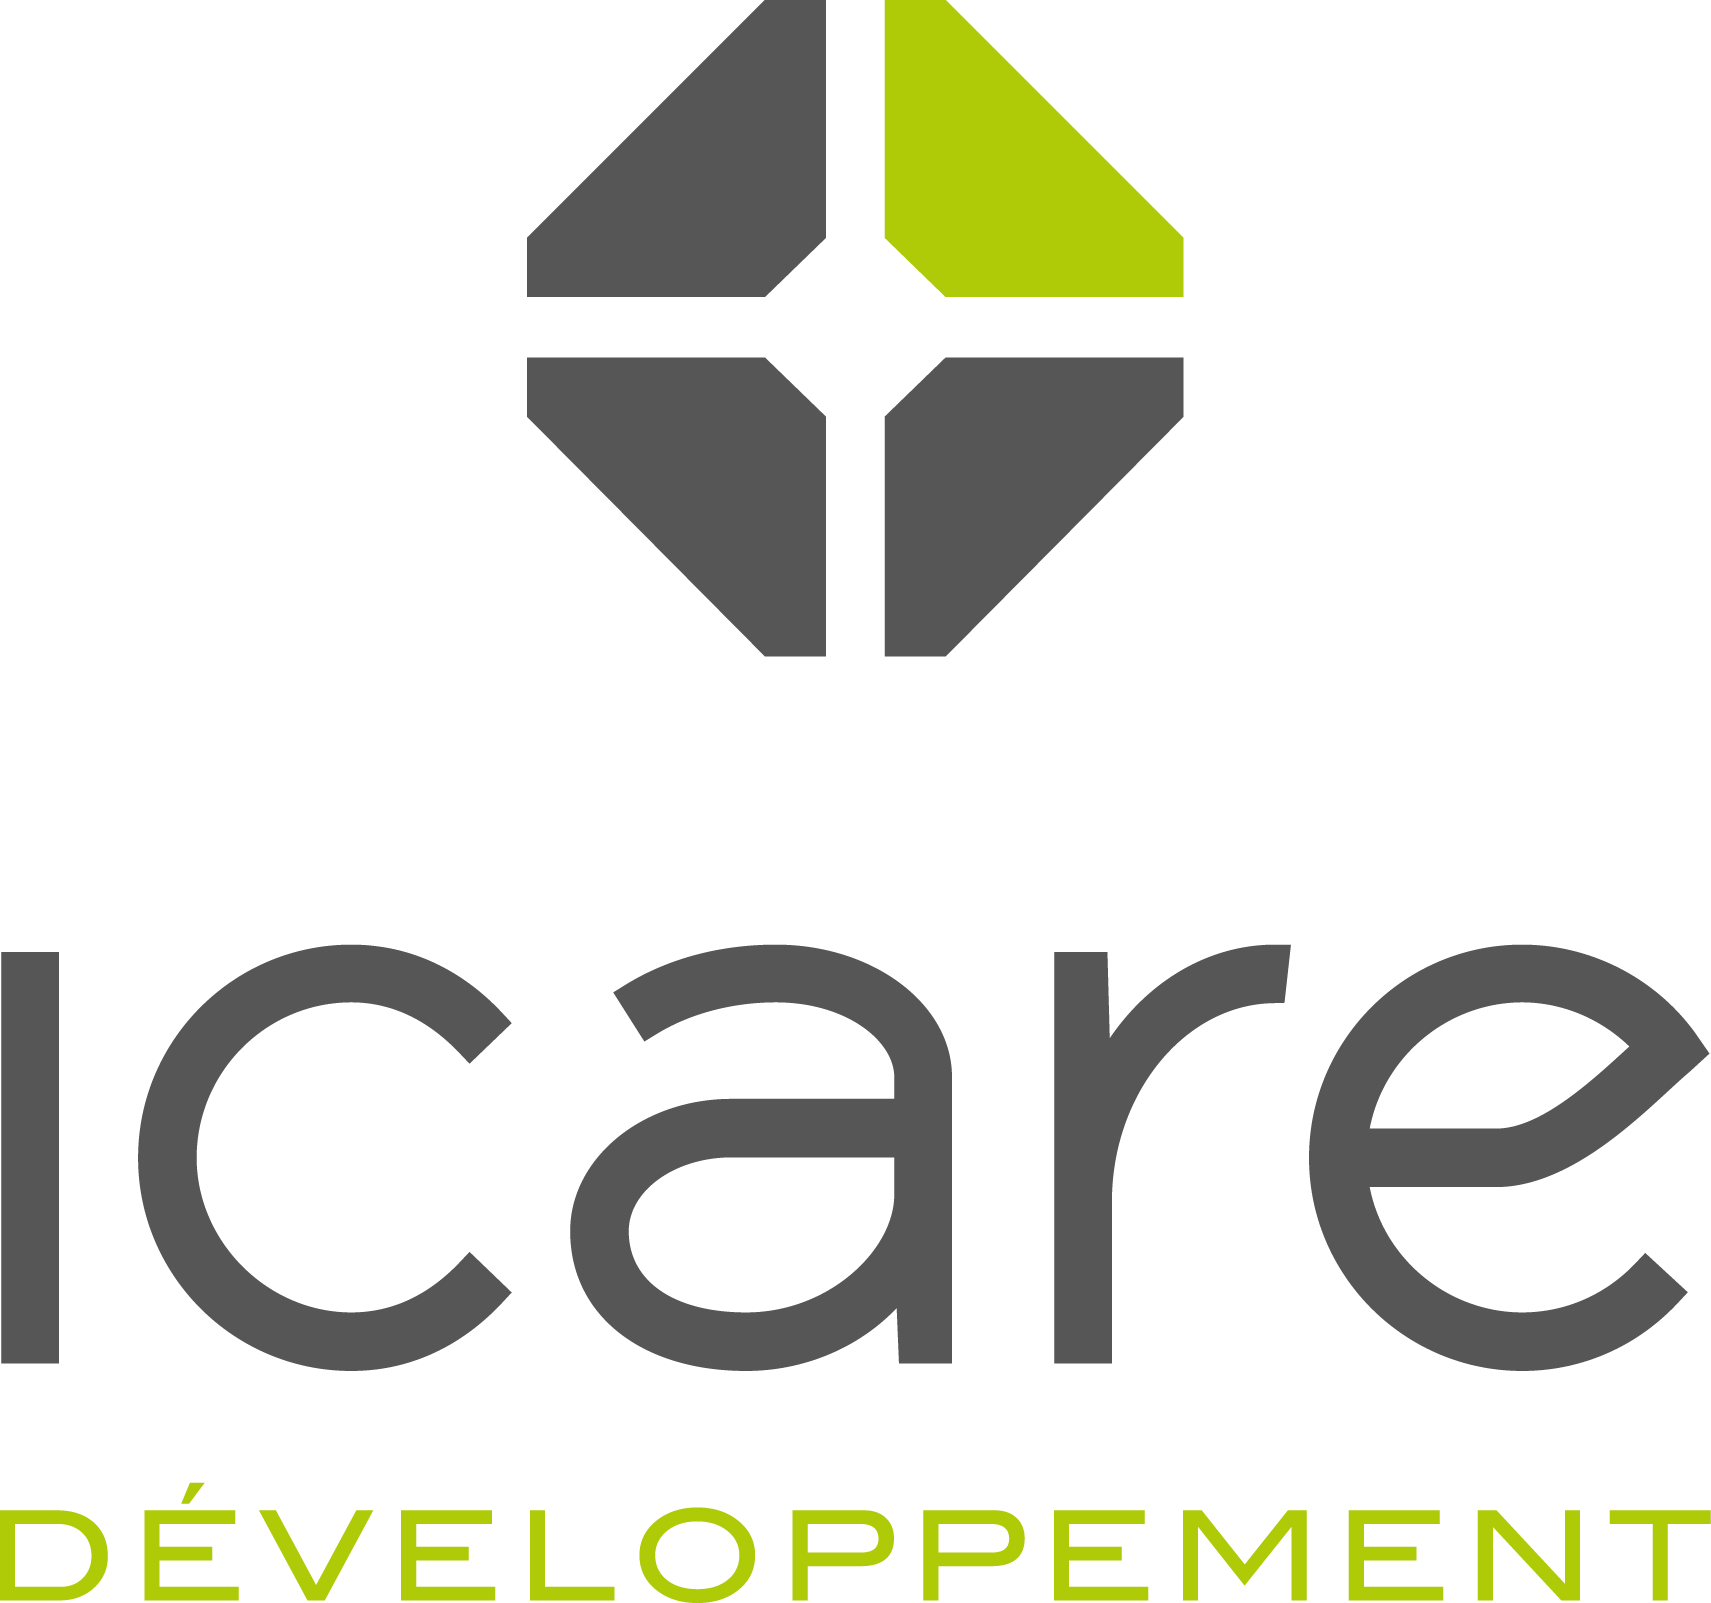 Logo Icare Développement